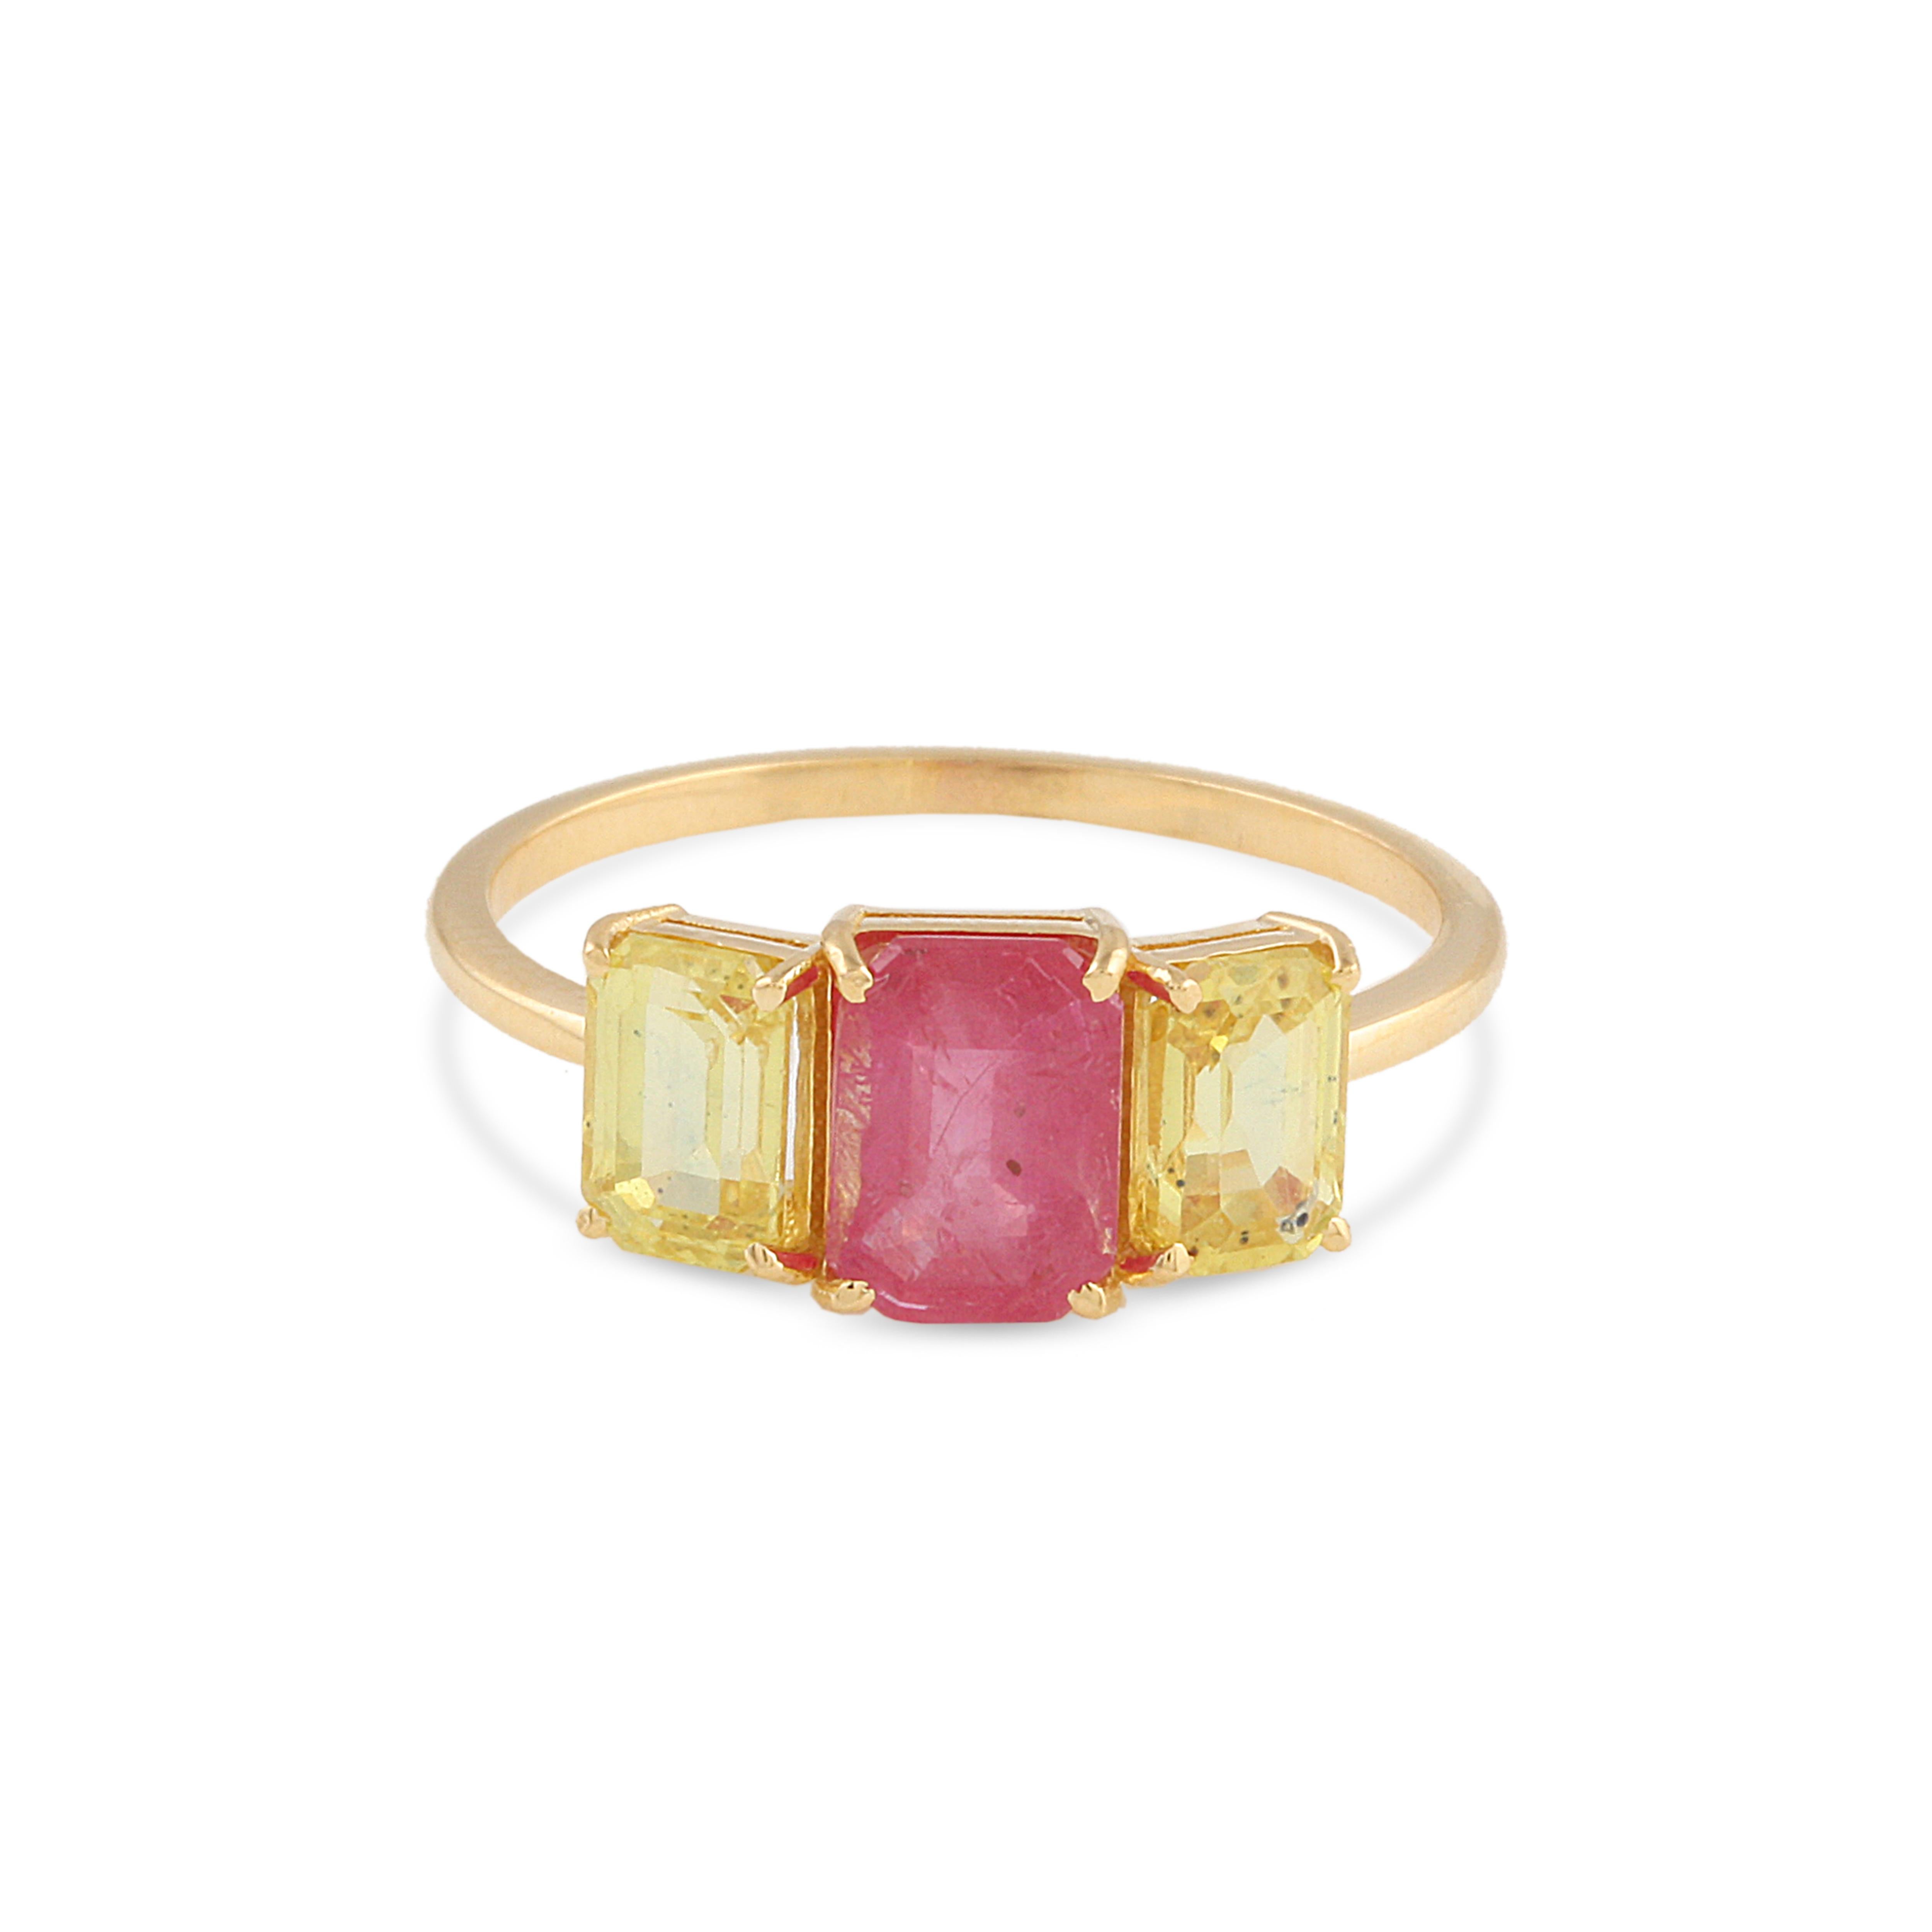 Tresor Beautiful Ring Funktion 2.45 Karat Edelstein. Die Ringe sind eine Ode an die luxuriöse und doch klassische Schönheit mit funkelnden Edelsteinen und femininen Farbtönen. Ihr zeitgemäßes und modernes Design macht sie perfekt und vielseitig zu